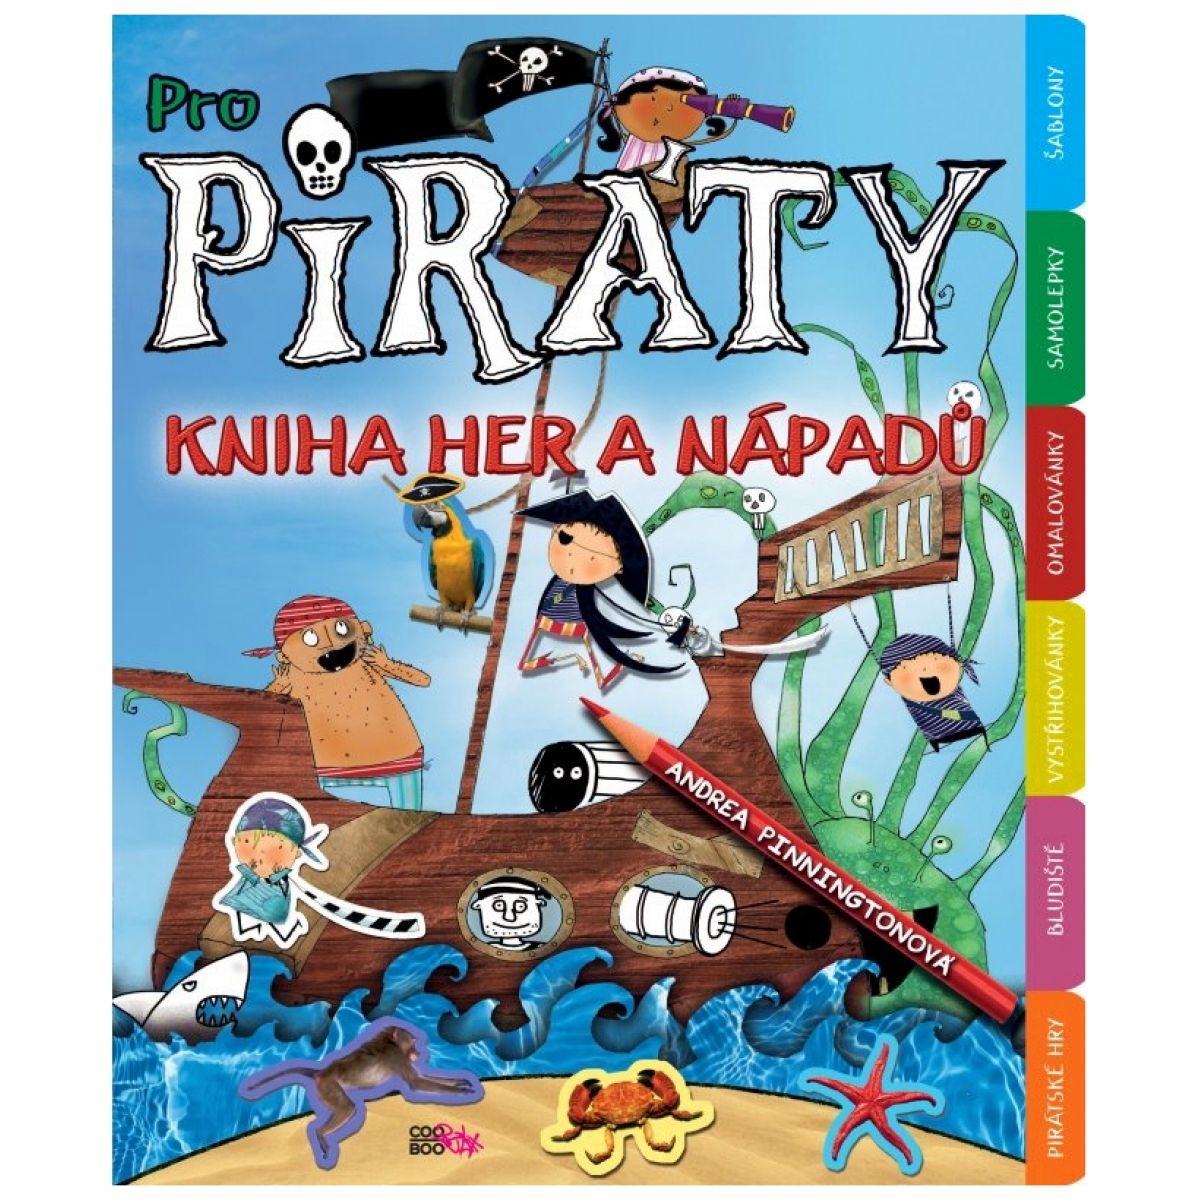 Pro piráty - Andrea Pinningtonová (COOBOO 1013001161)